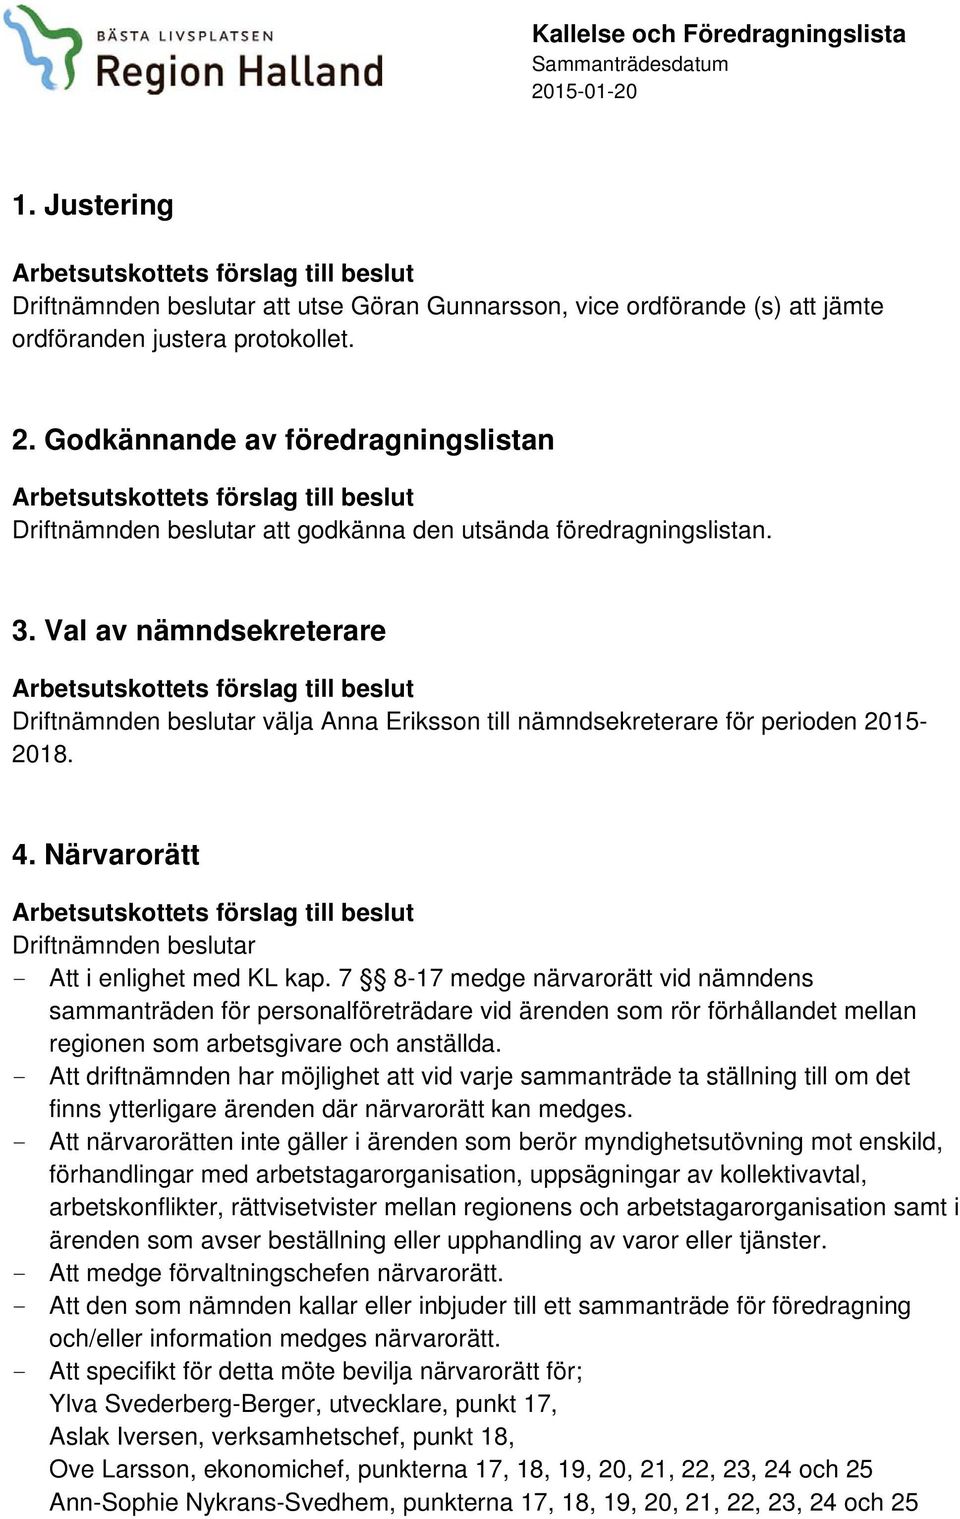 Val av nämndsekreterare Driftnämnden beslutar välja Anna Eriksson till nämndsekreterare för perioden 2015-2018. 4. Närvarorätt Driftnämnden beslutar - Att i enlighet med KL kap.